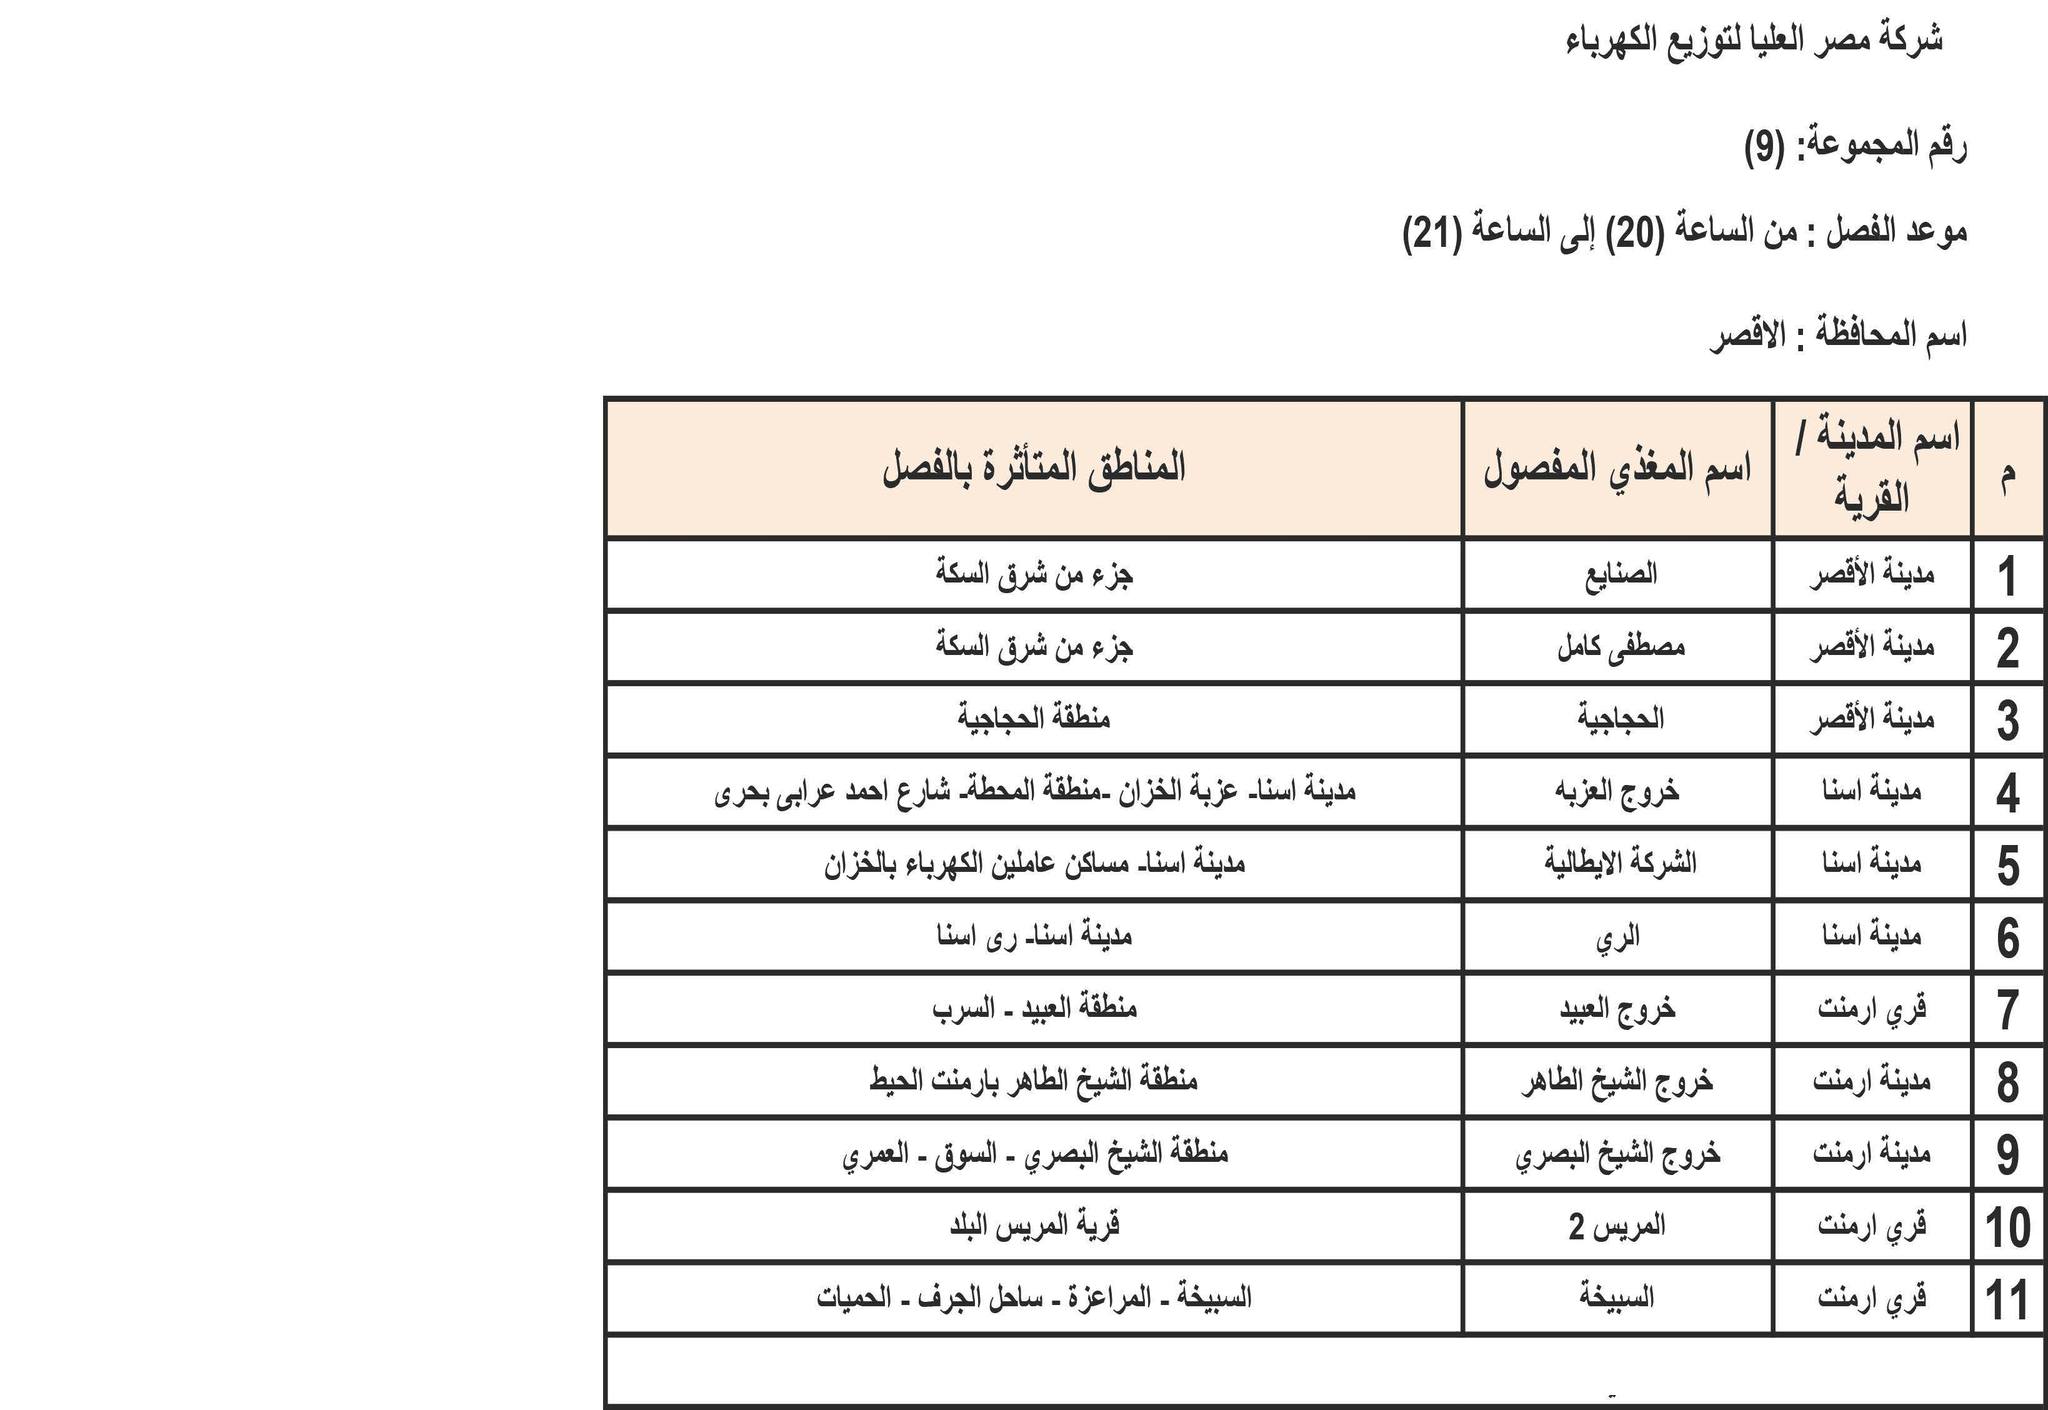 الإعلان عن خطة تخفيف أحمال الكهرباء في محافظة الأقصر 5